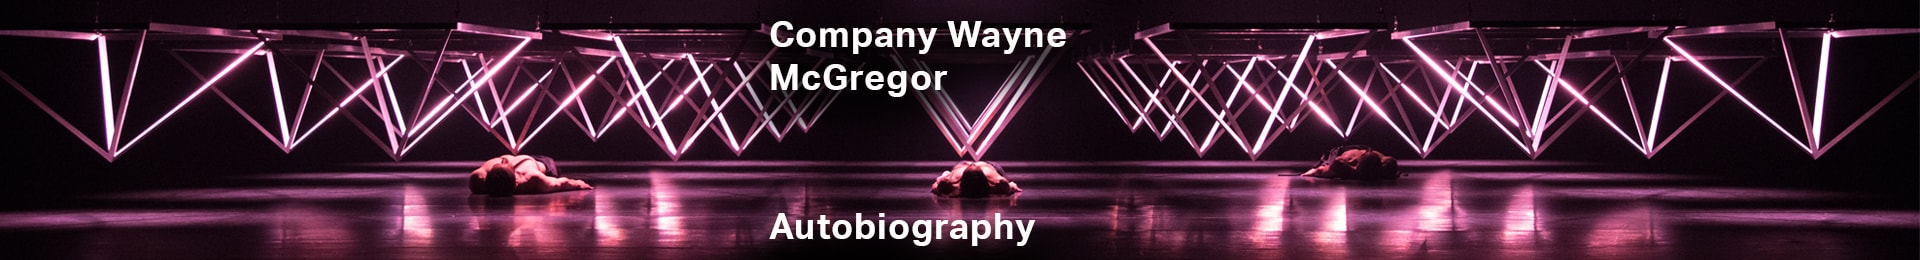 Company Wayne McGregor: Autobiography tickets